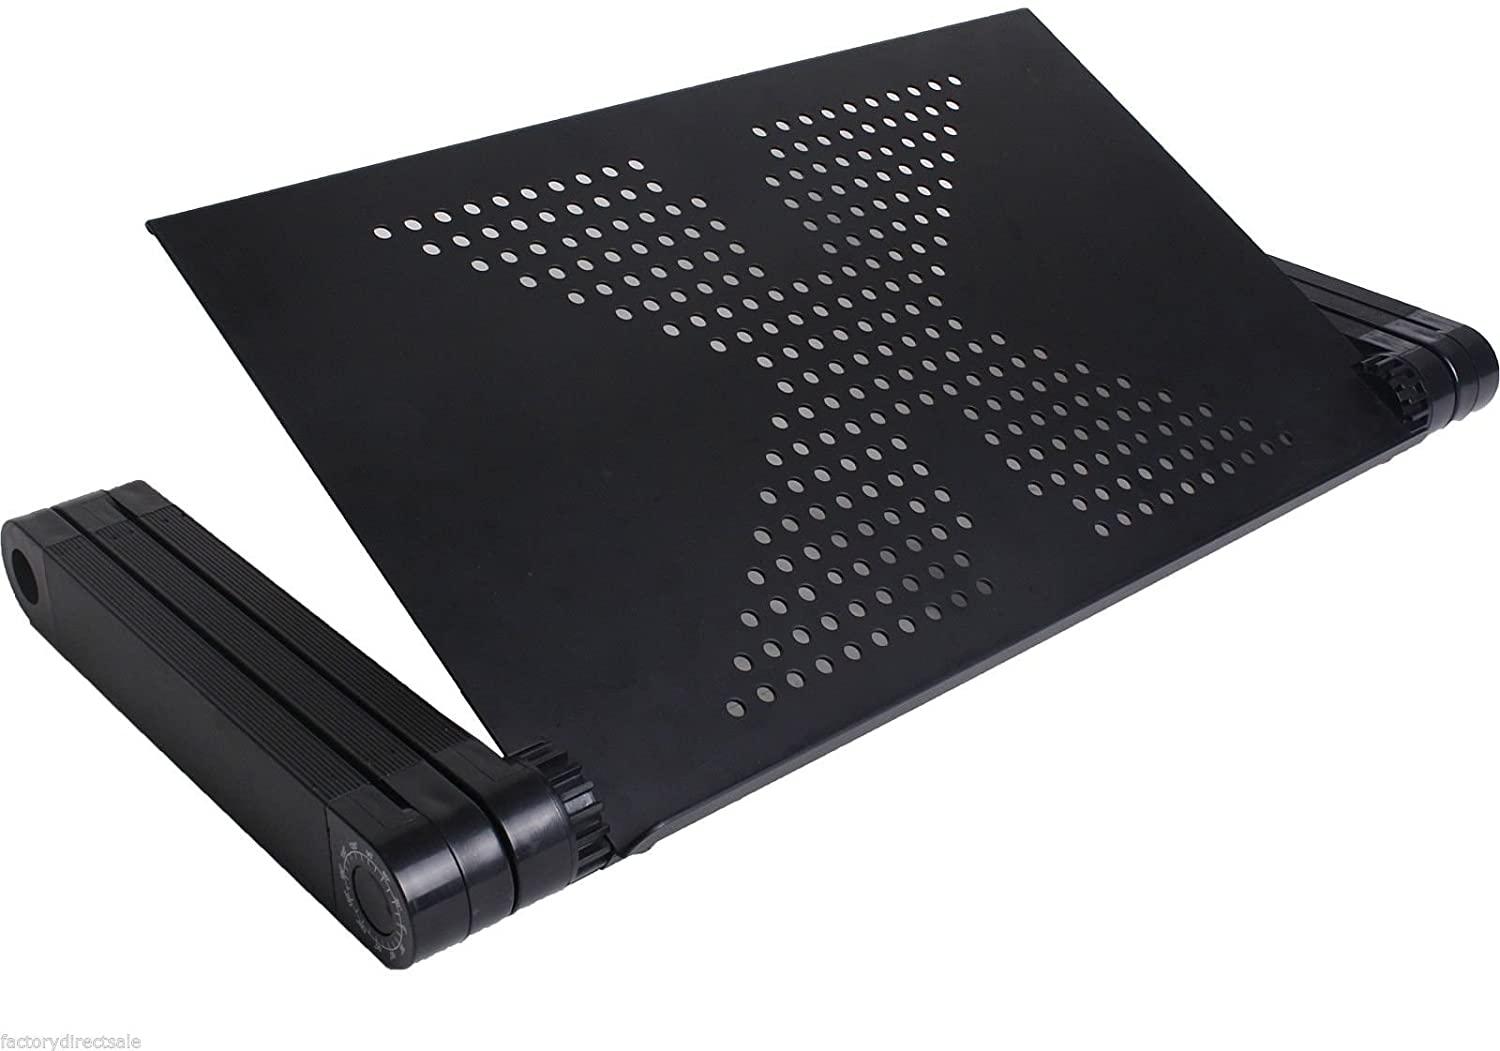 Столик для ноутбука с подставкой для мышки CG T50